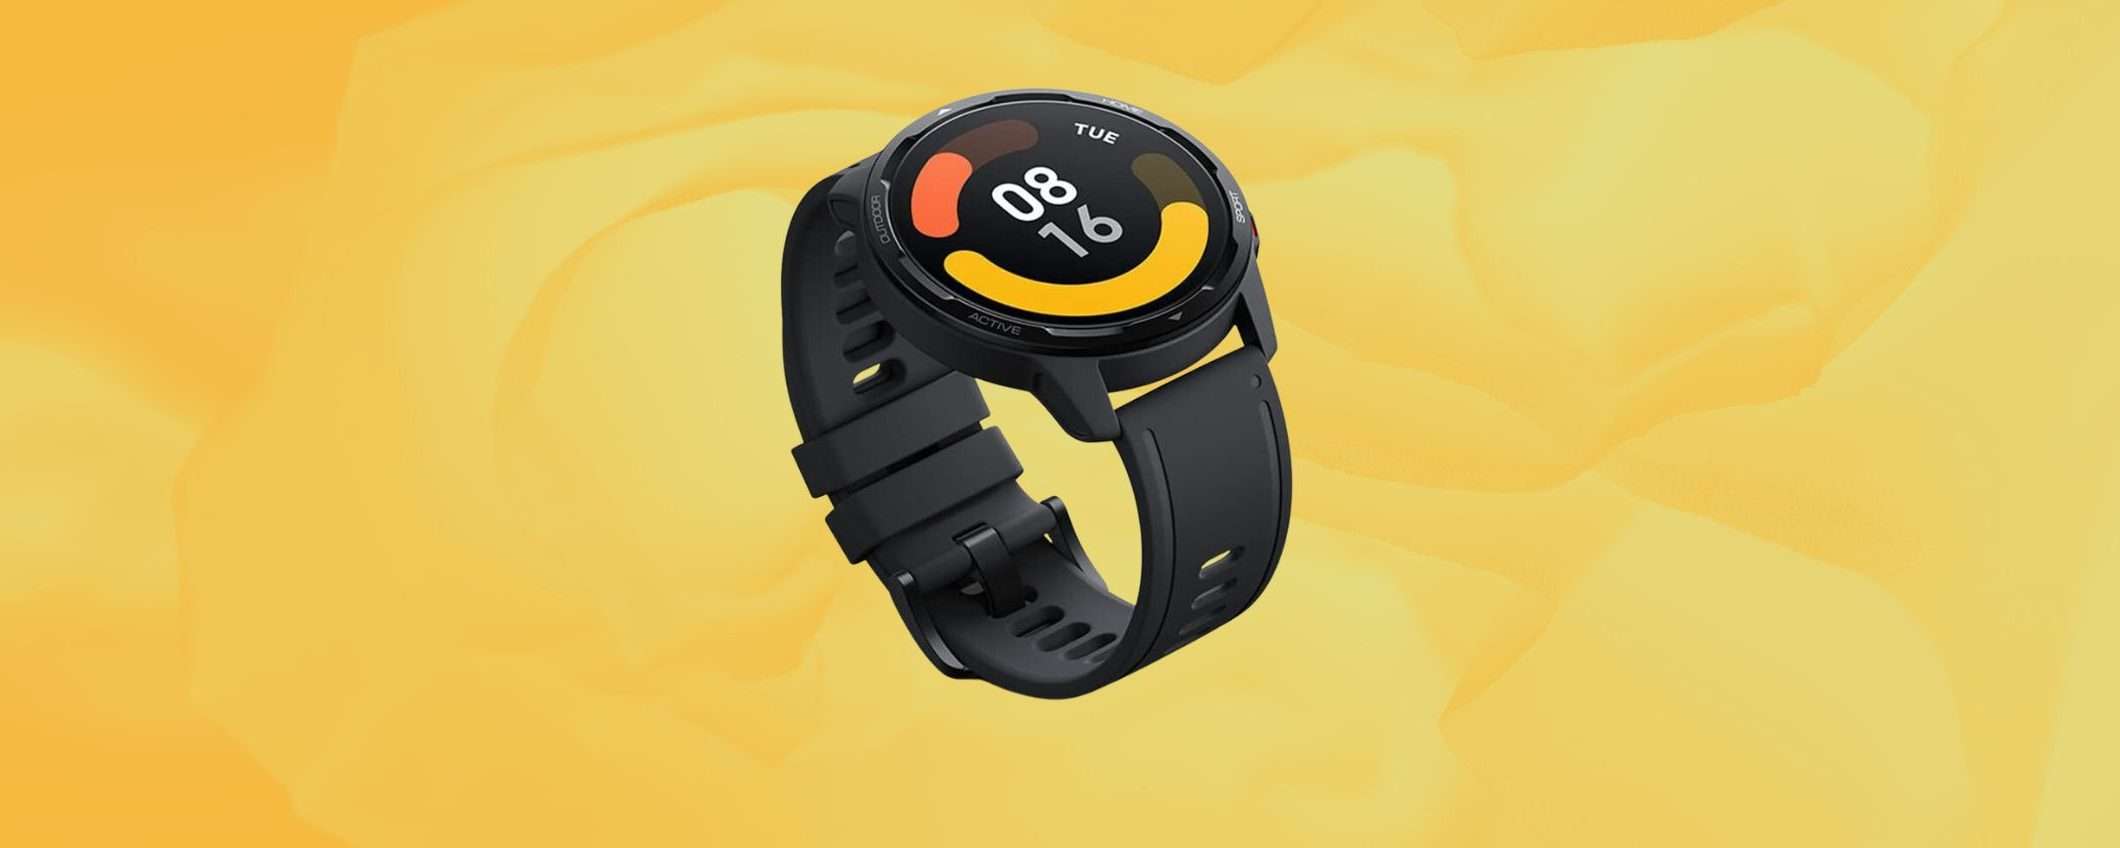 Xiaomi Watch S1 Active: smartwatch per lo sport ad un SUPER SCONTO (-55%)